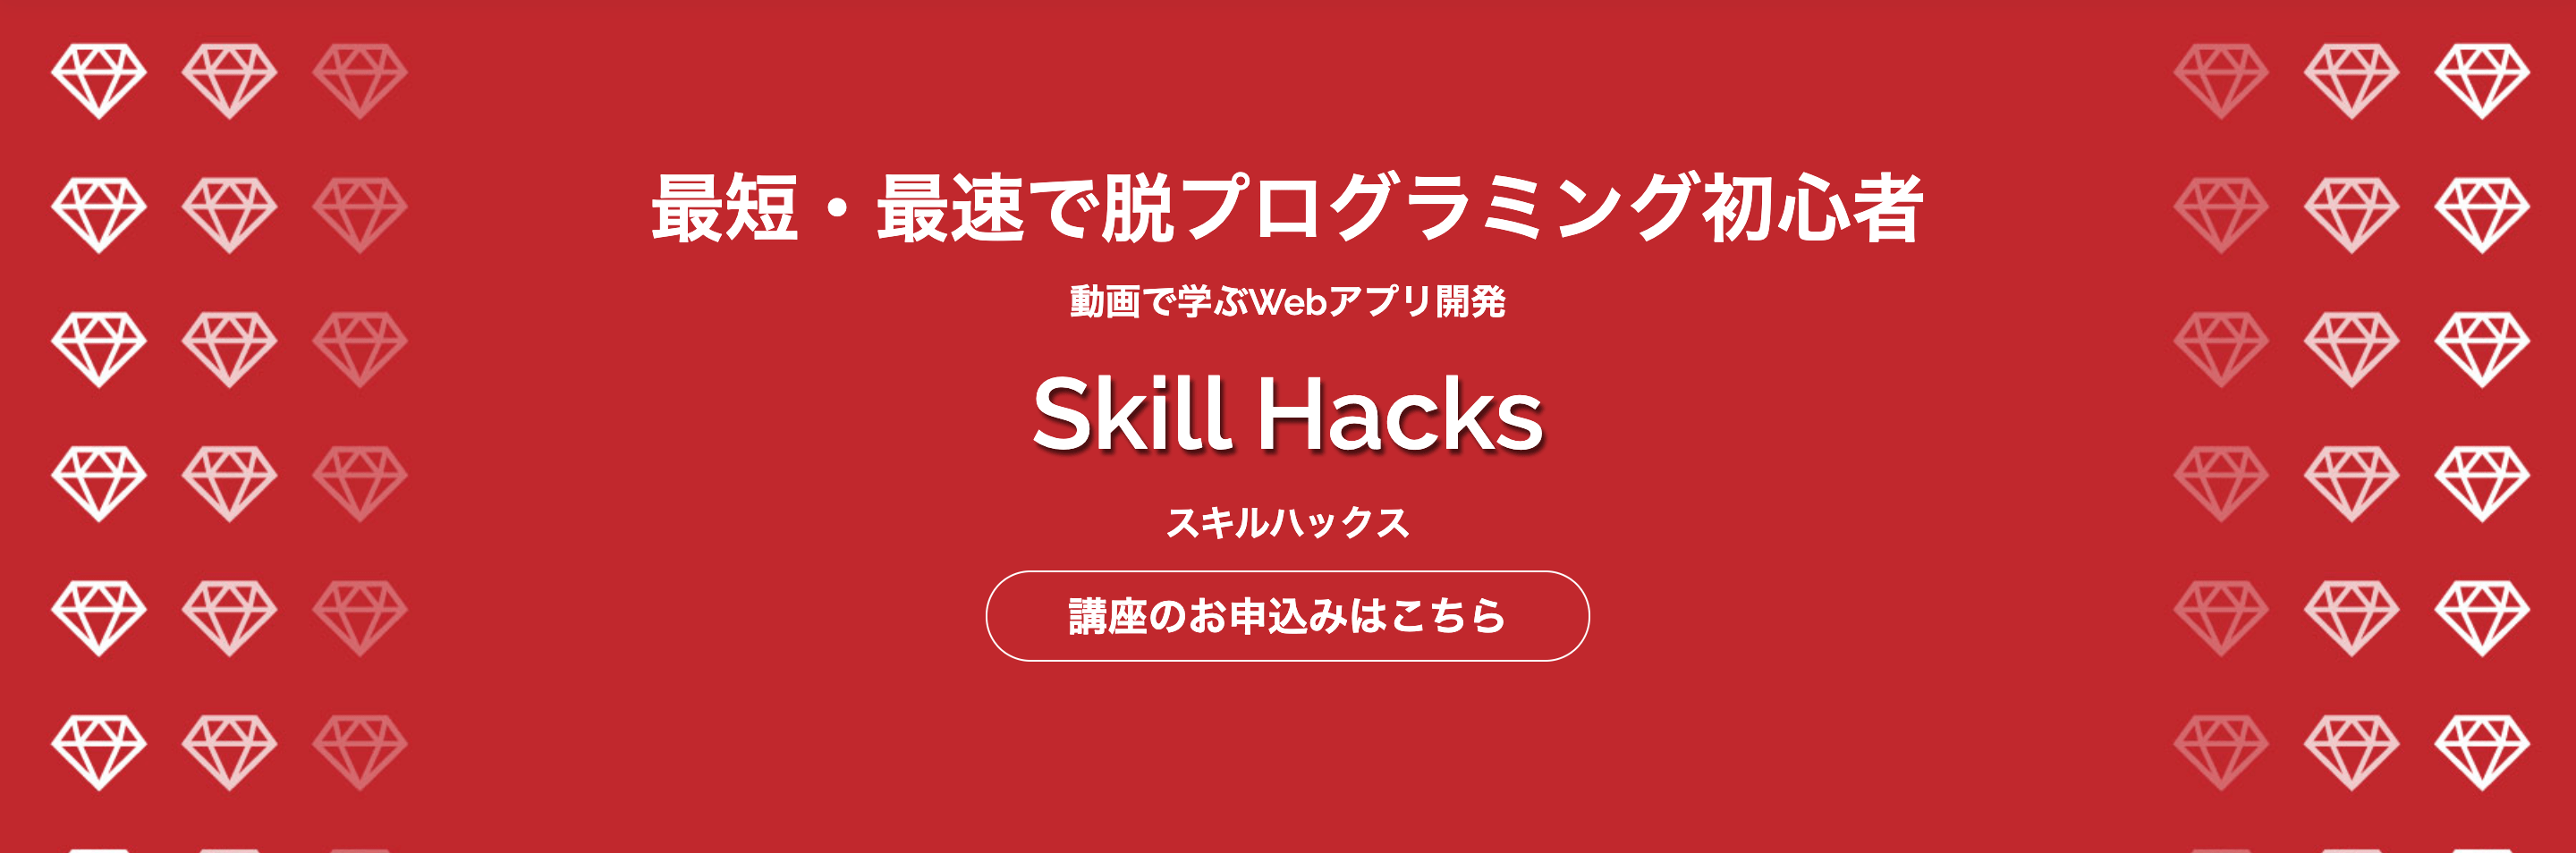 SkillHacks